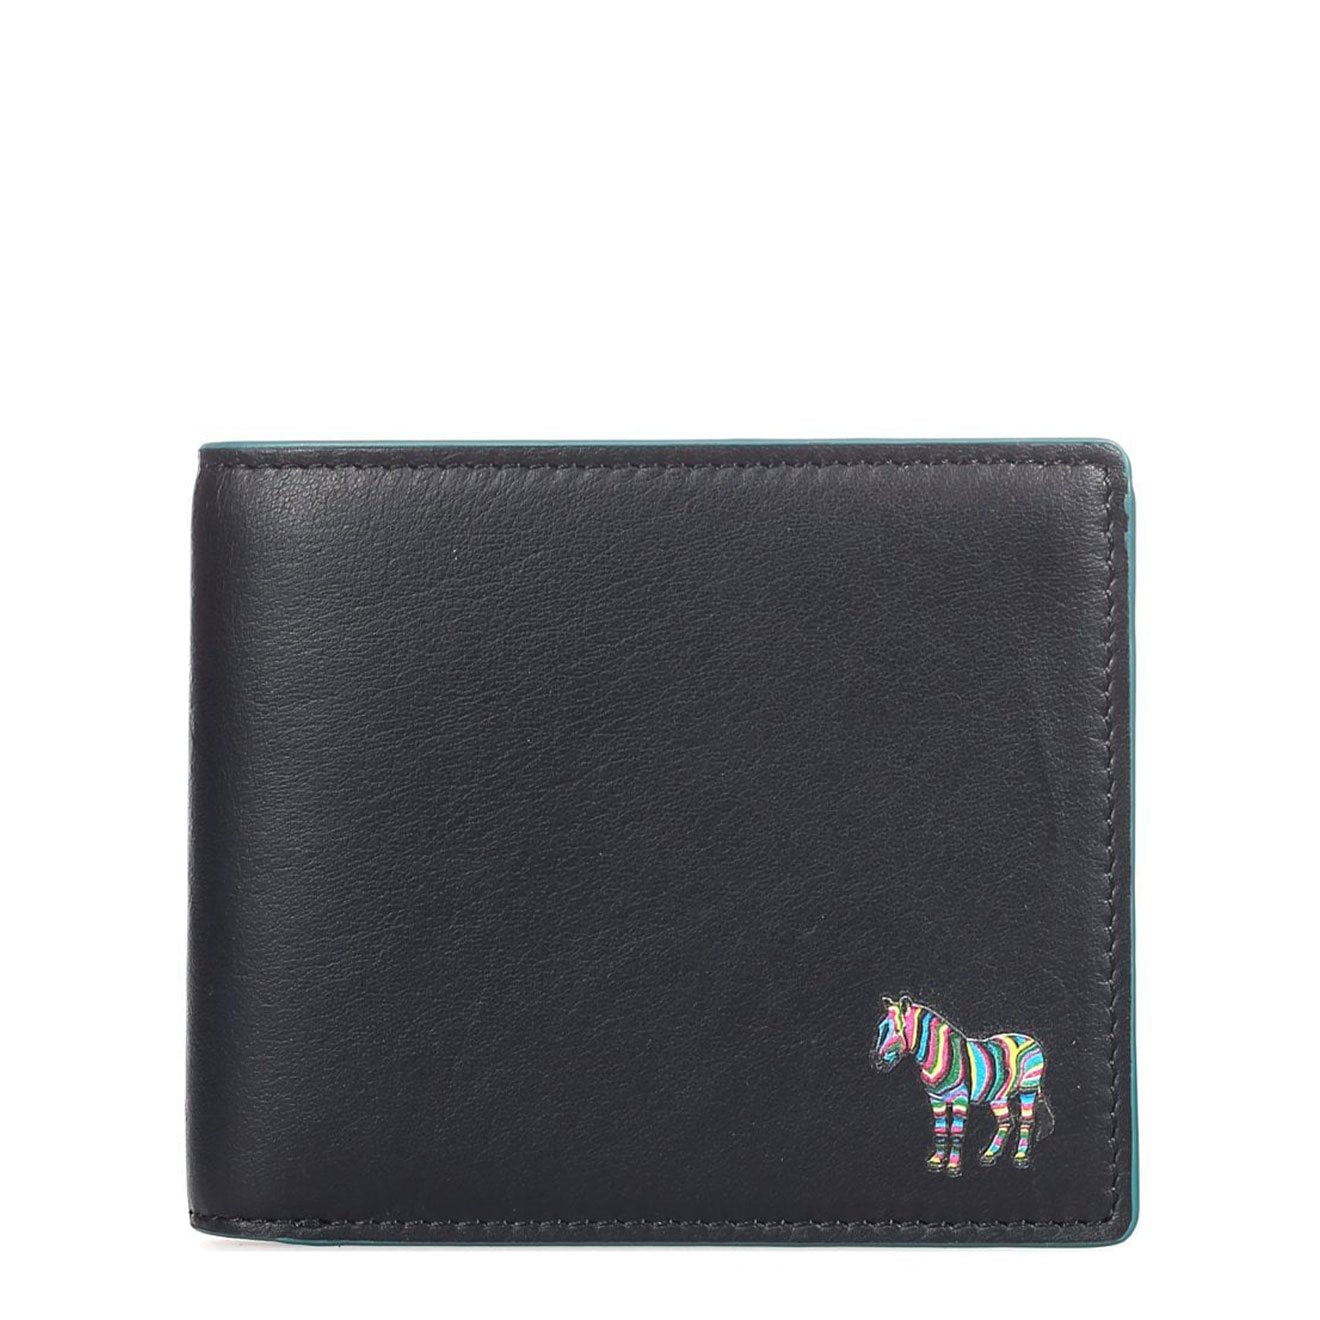 Paul Smith Wallet Billfold Black Zebra | Yards Store Menswear